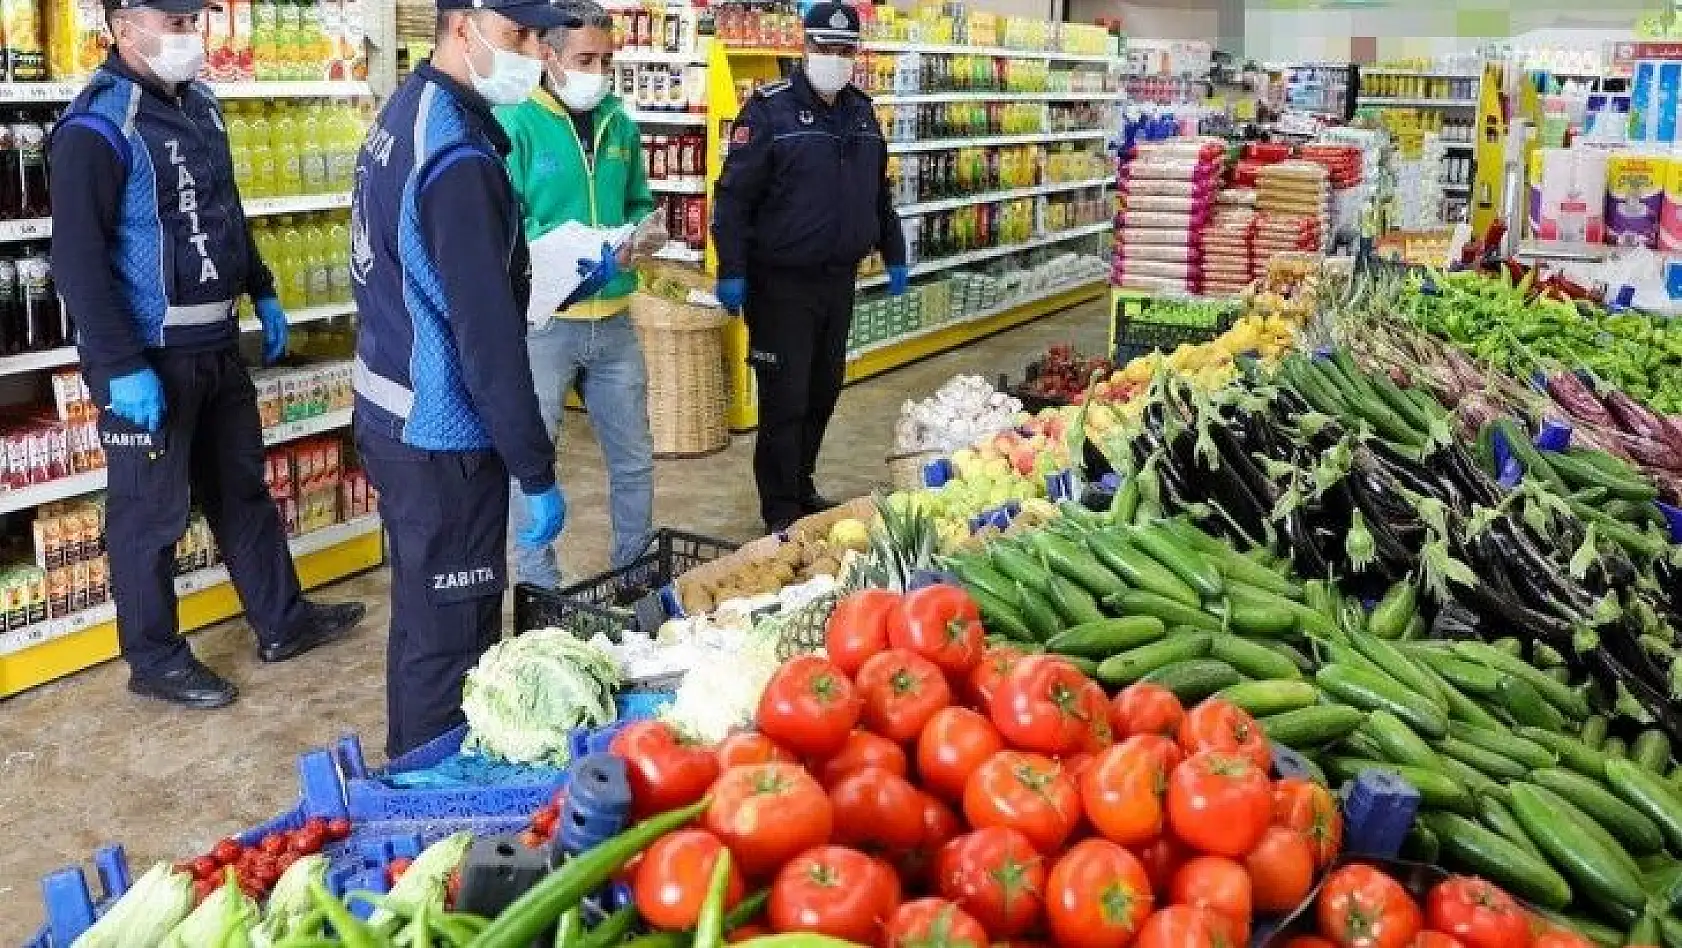 Kayseri'de son 5 yılda temel gıda ürünlerinde düşündüren fiyat artışı?